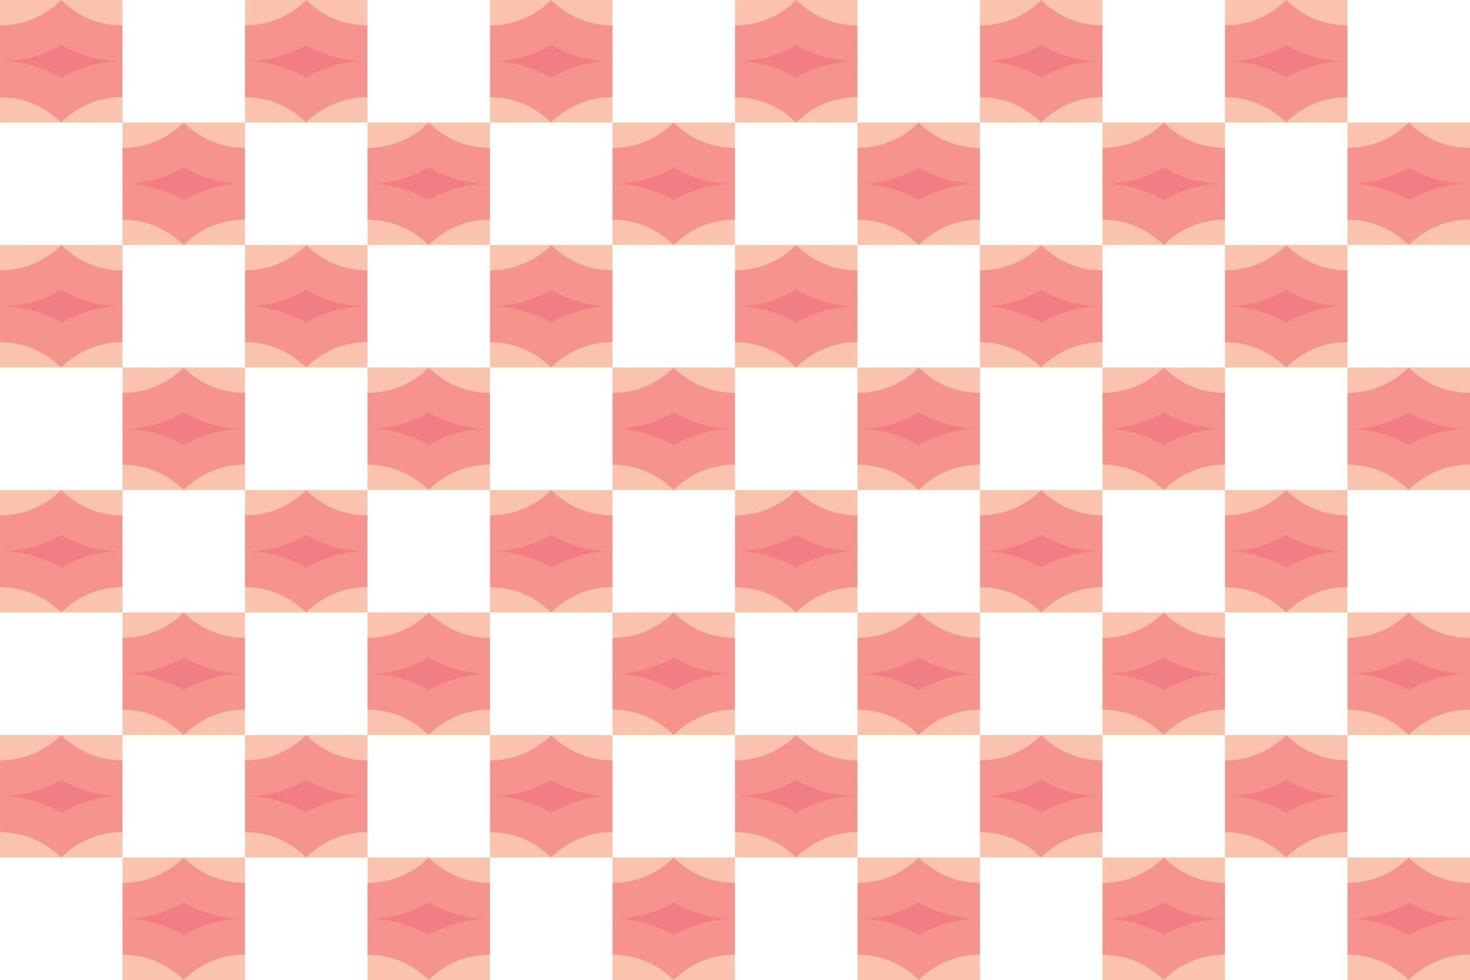 geométrico el patrón de tablero de ajedrez es un patrón de rayas modificadas que consta de líneas horizontales y verticales cruzadas que forman cuadrados. vector